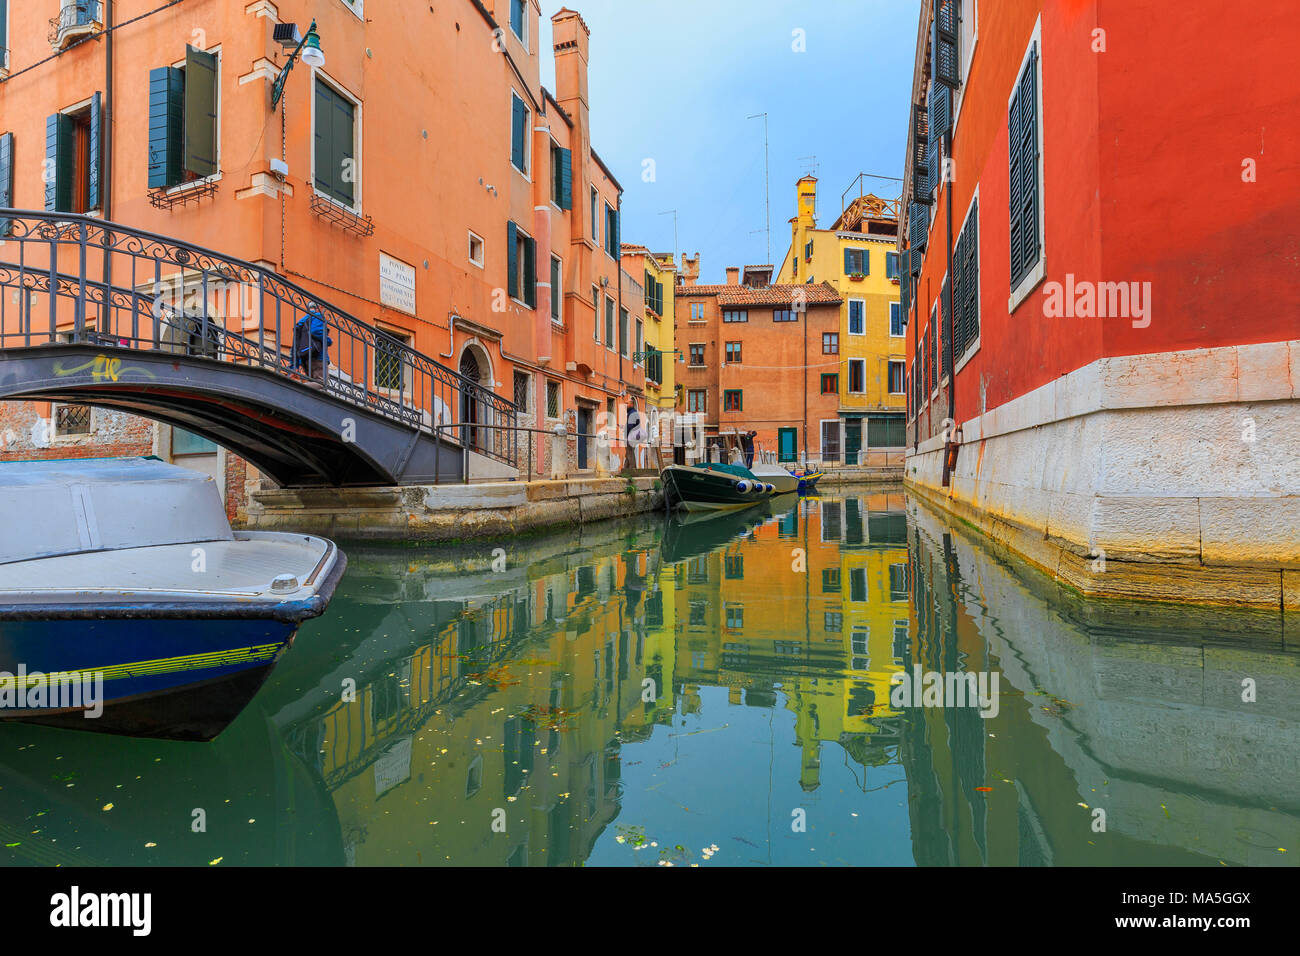 Die Farben der bunten Häuser spiegeln sich in einem Kanal, Venedig, Venetien, Italien. Stockfoto